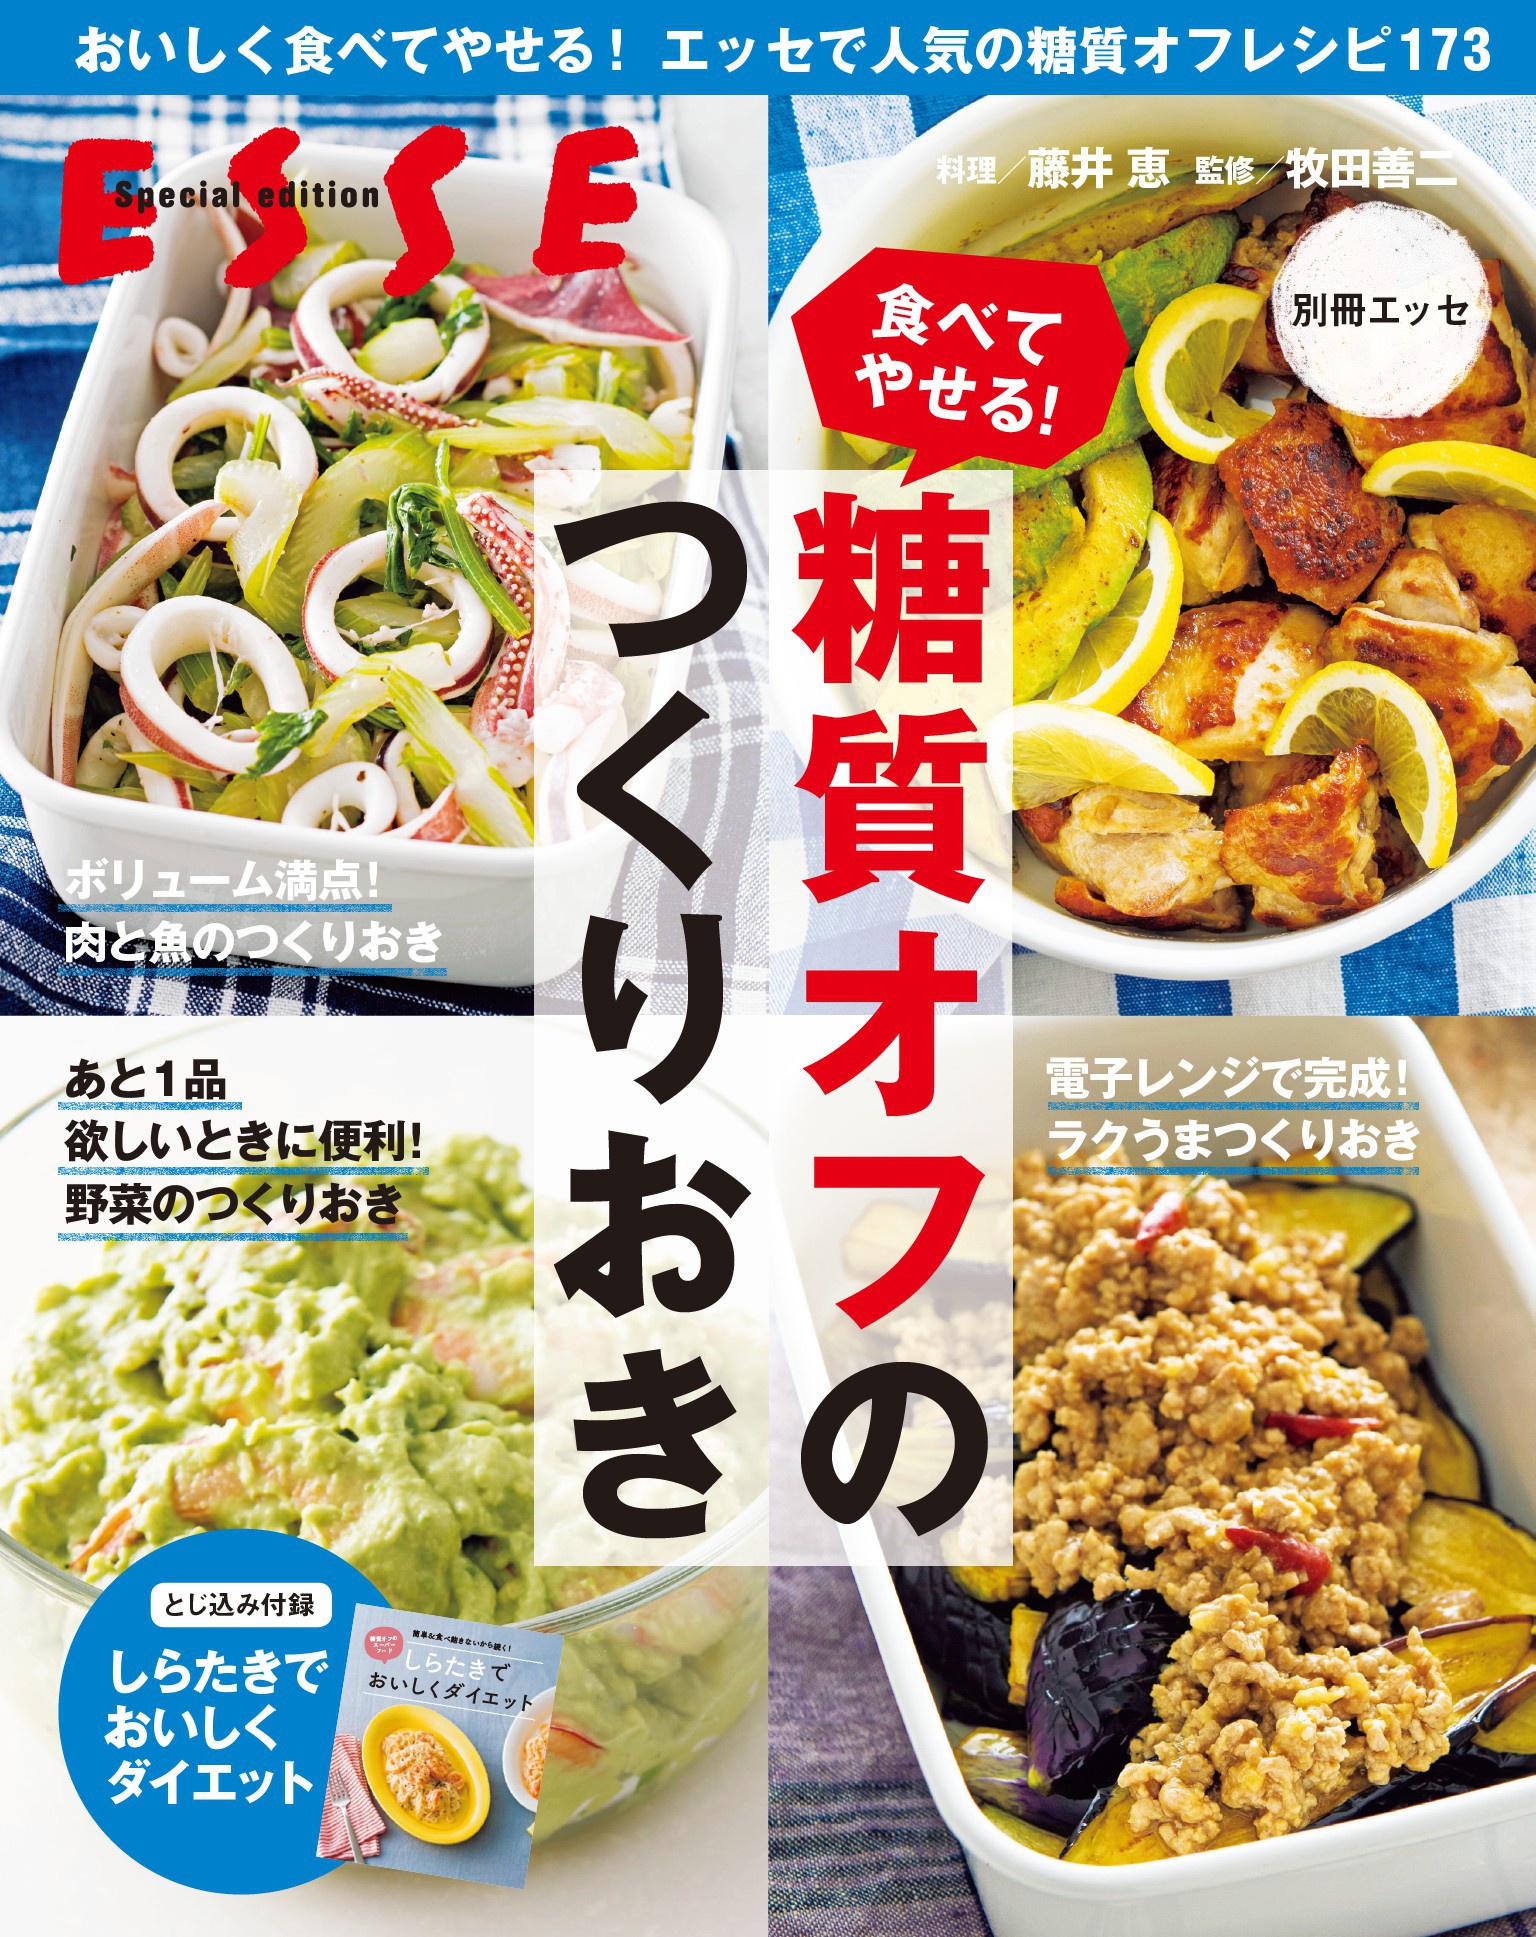 おいしく痩せる!!! ダイエット レシピ 2冊セット - ダイエットフード